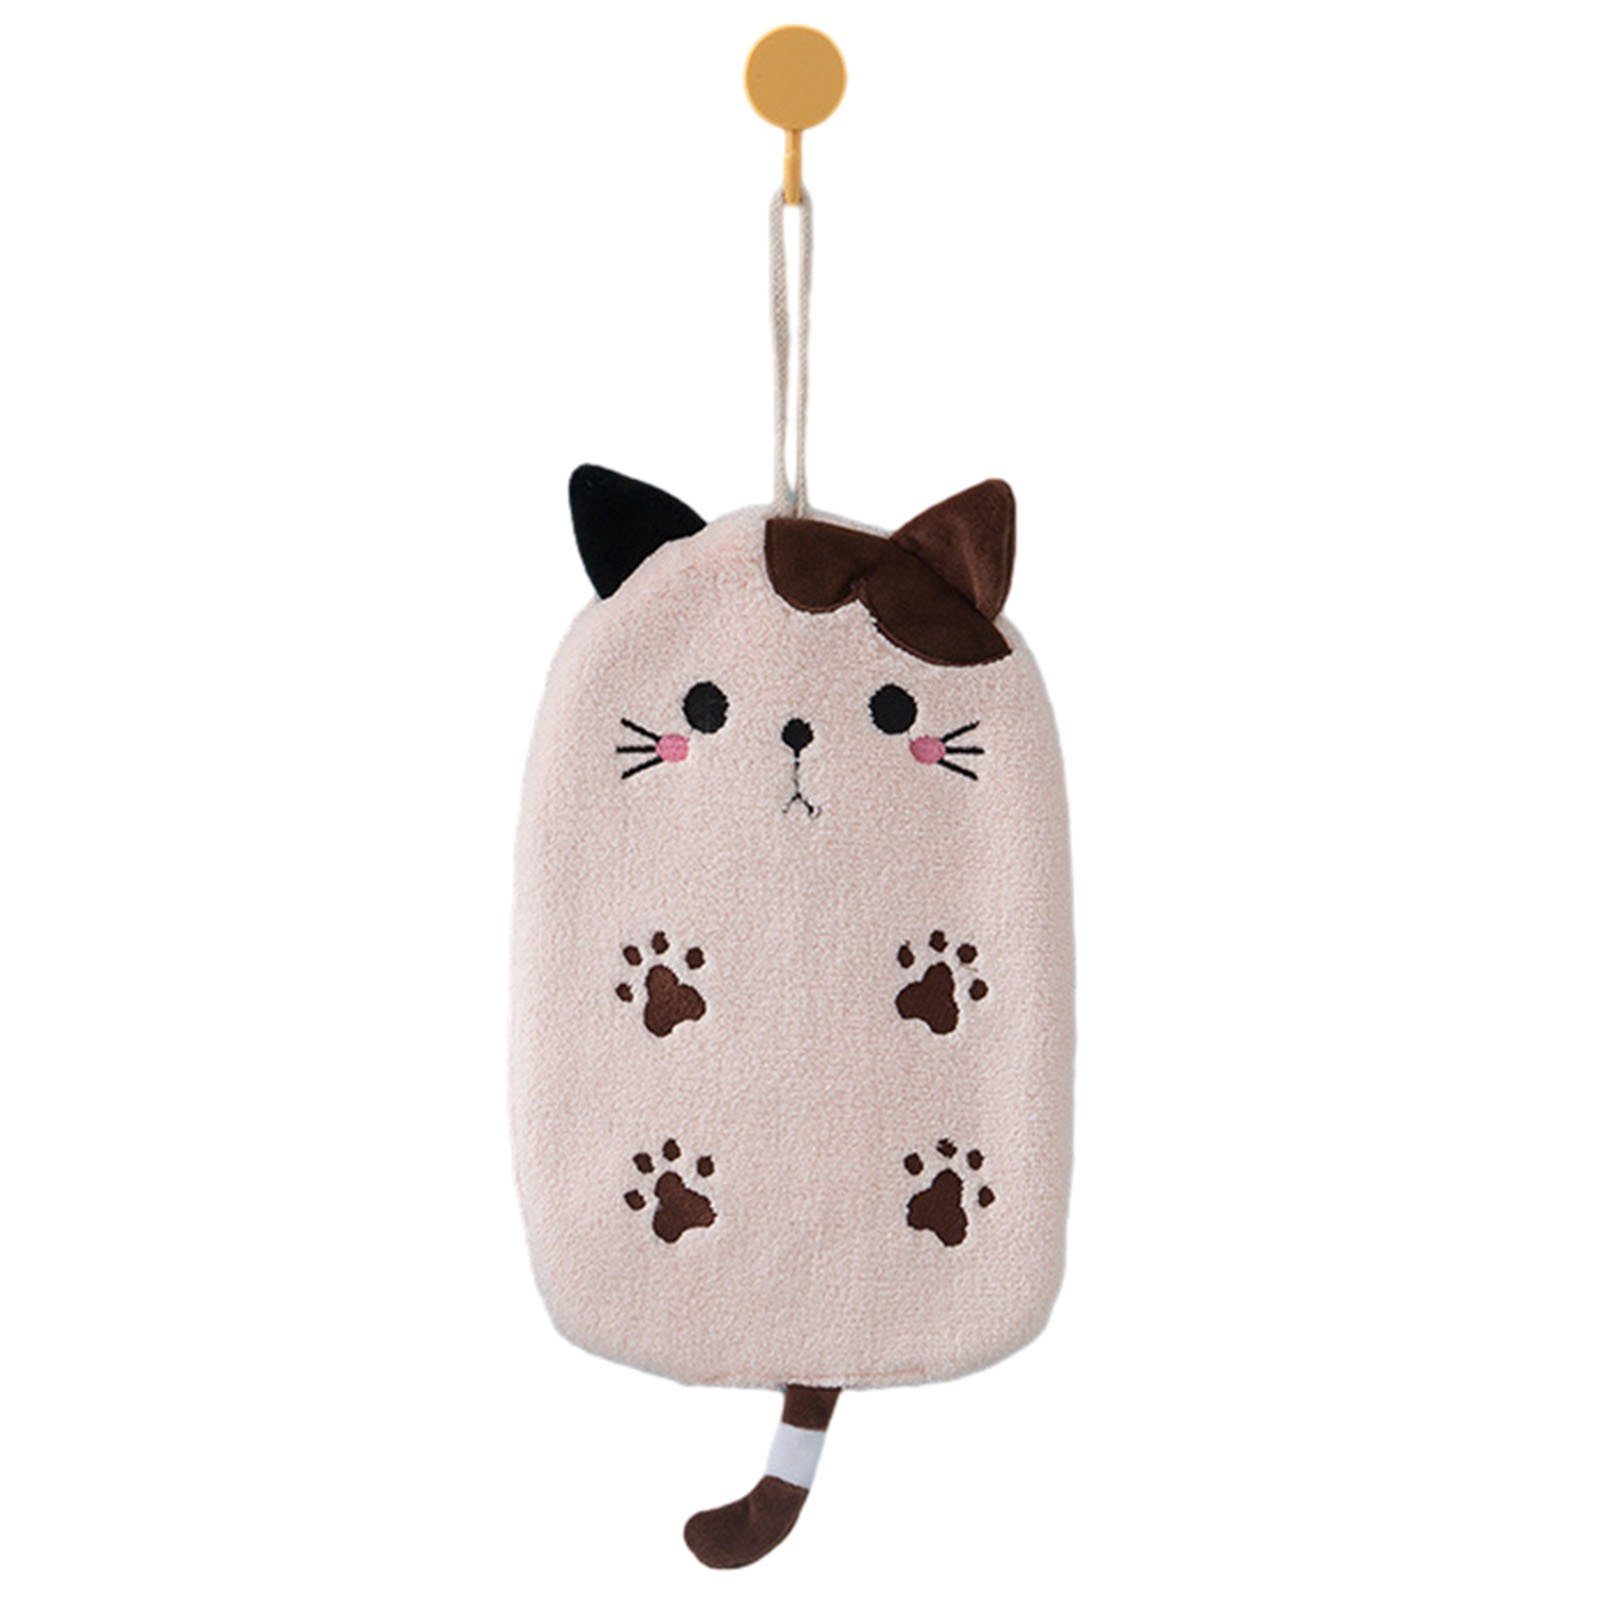 Blusmart Handtuch Set Hübsches Mikrofaser-Handtuch In Katzenform Zum Aufhängen, Lichtecht pink